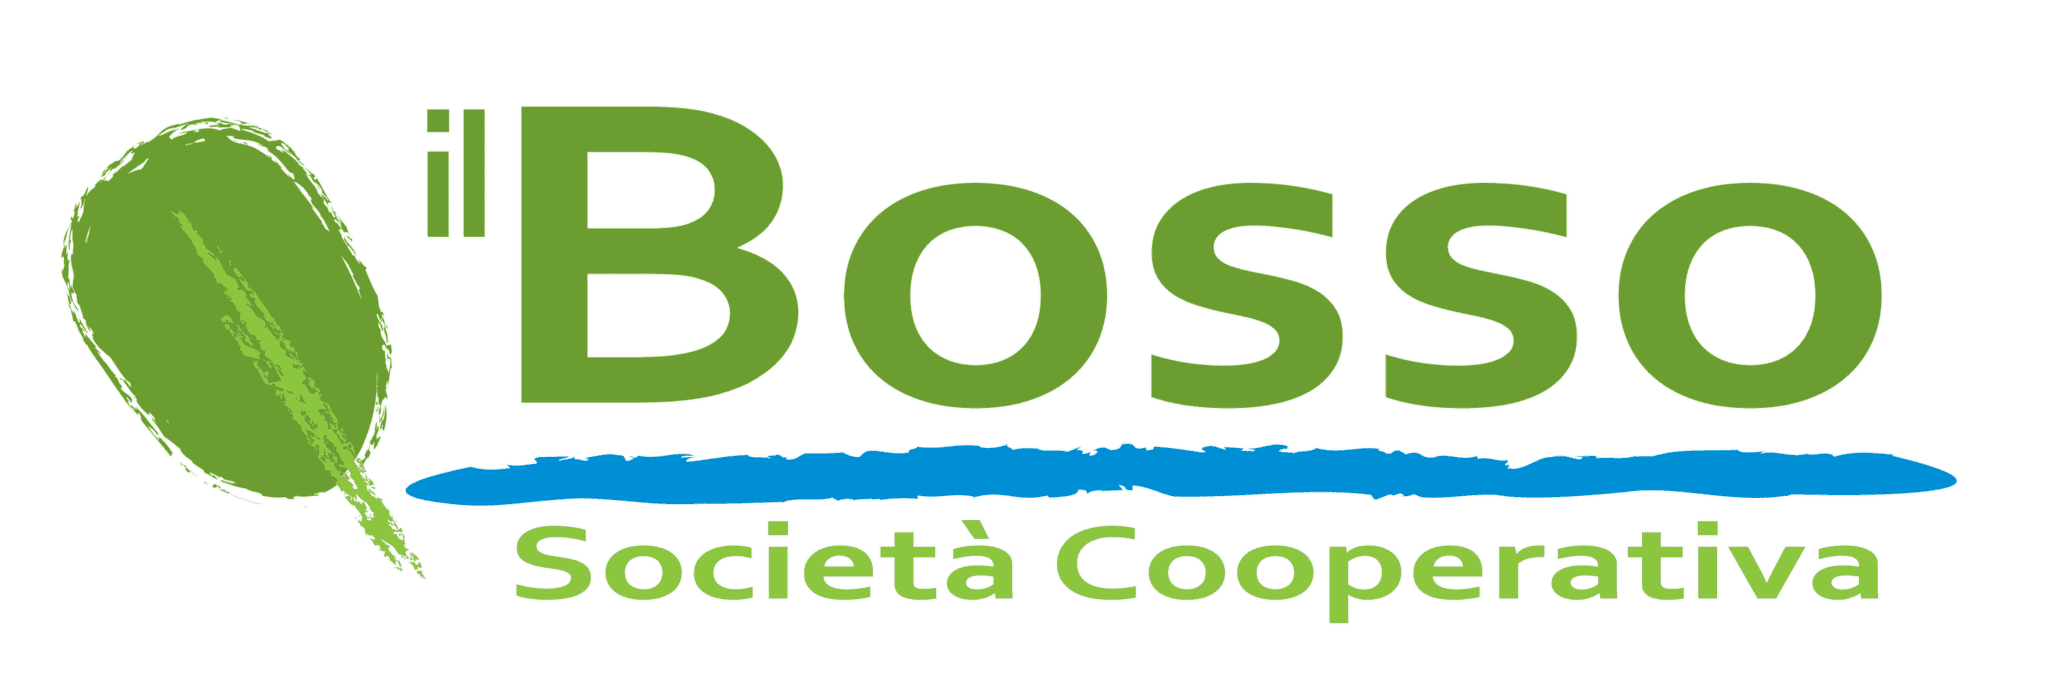 logo_ilbosso_s